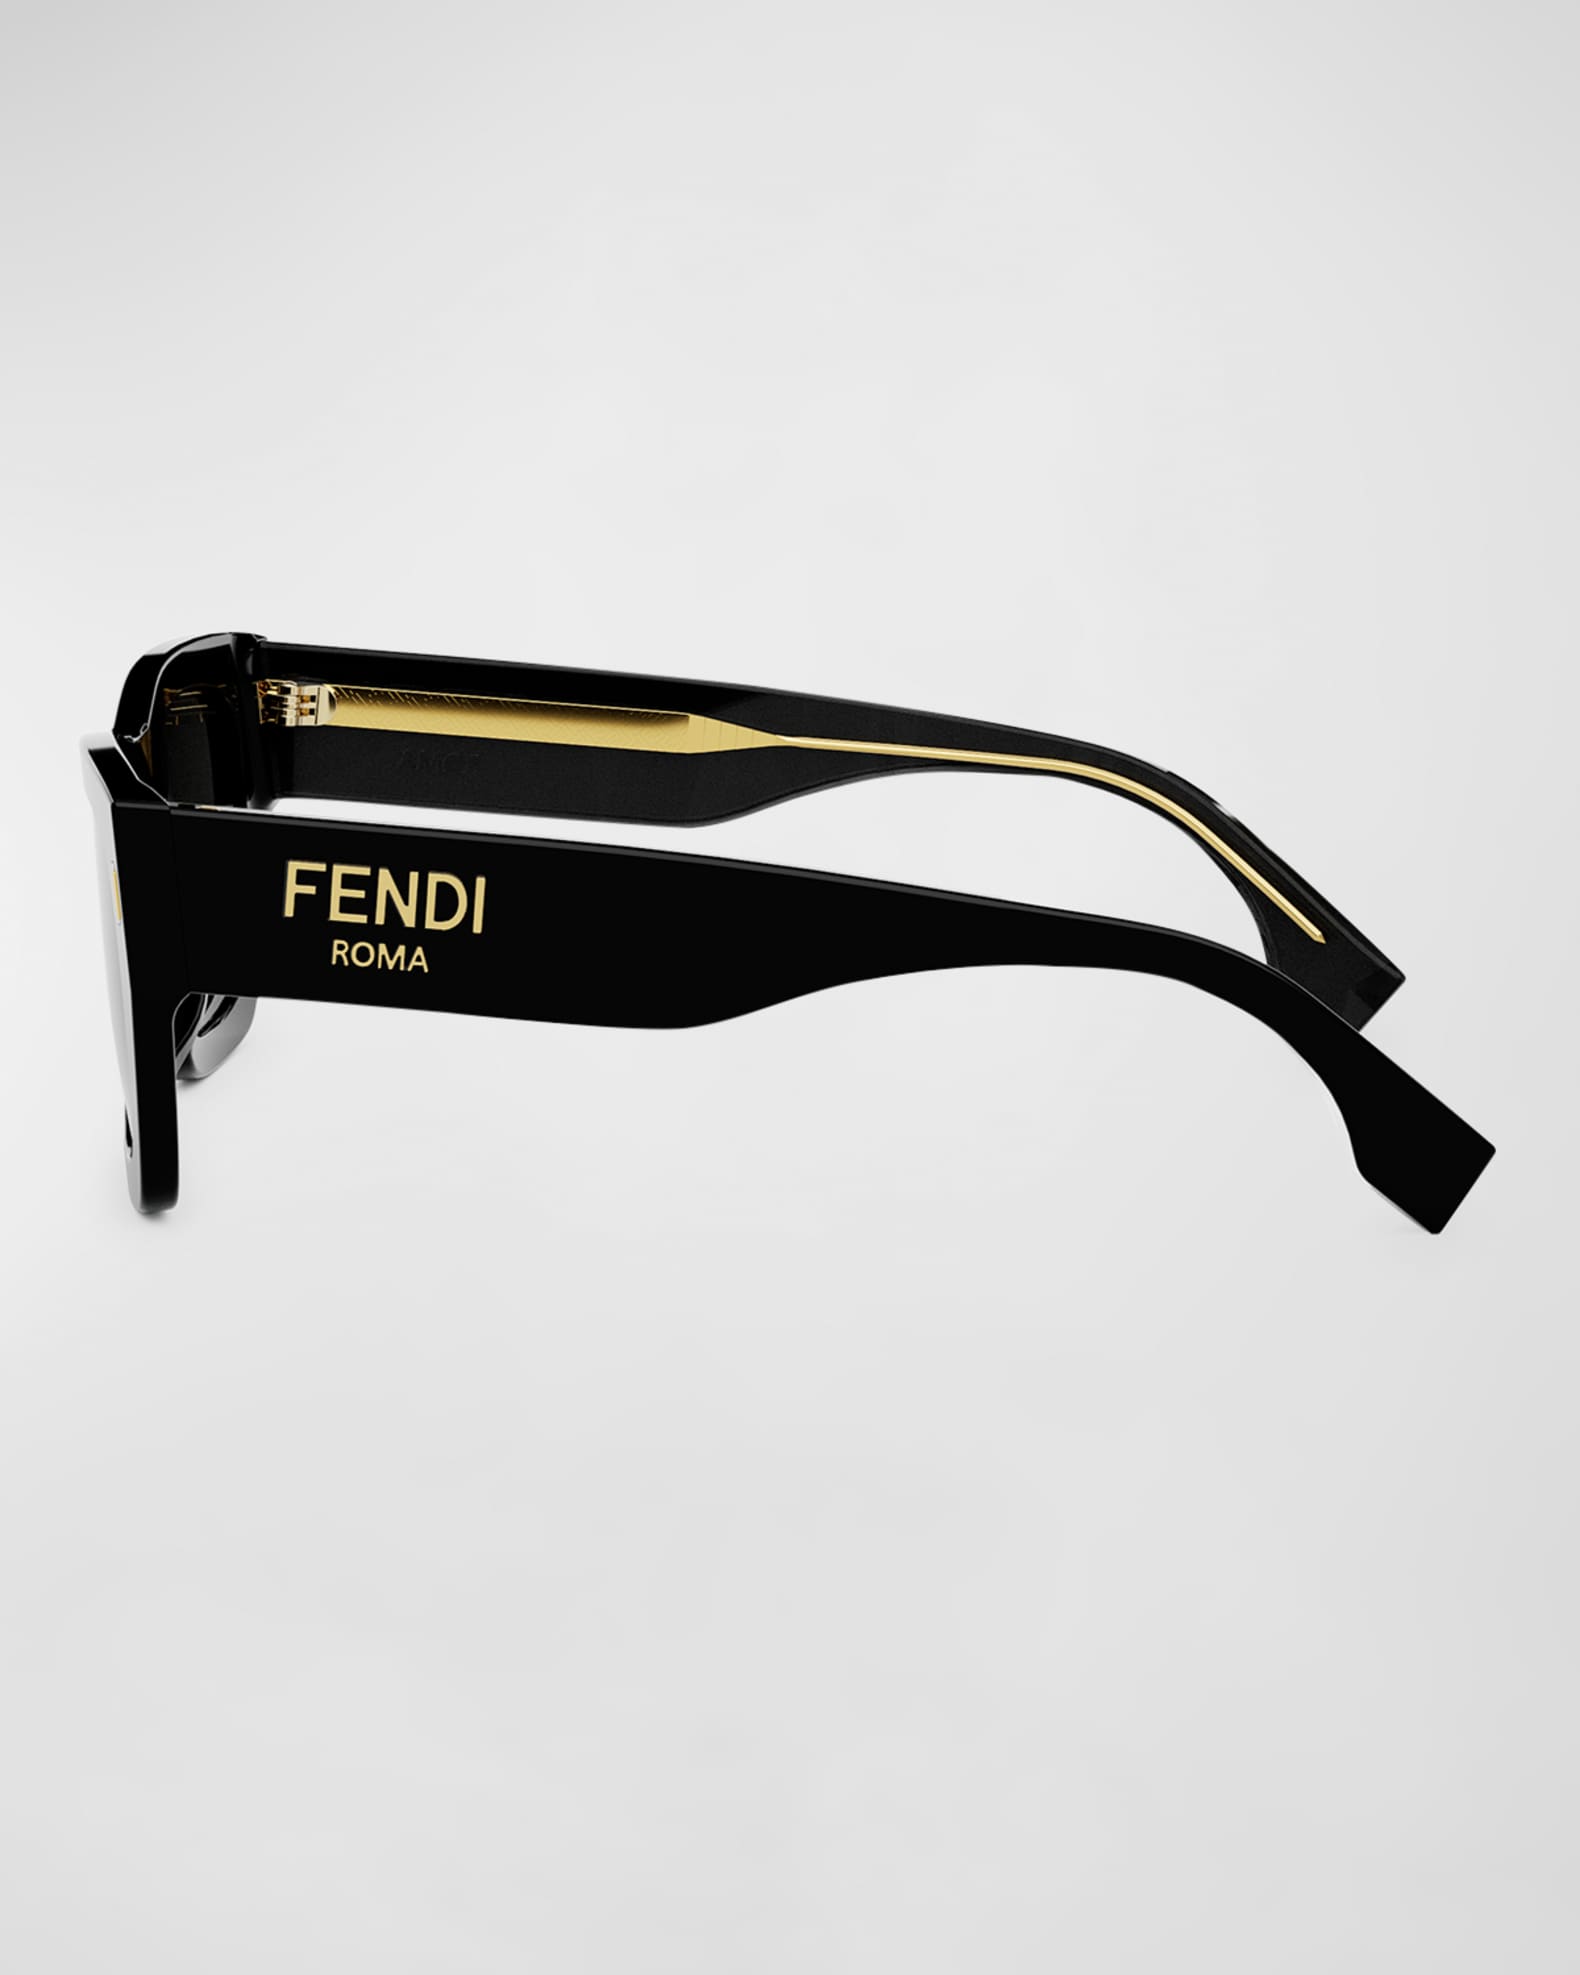 Fendi Fendi Roma Square Acetate Sunglasses | Neiman Marcus